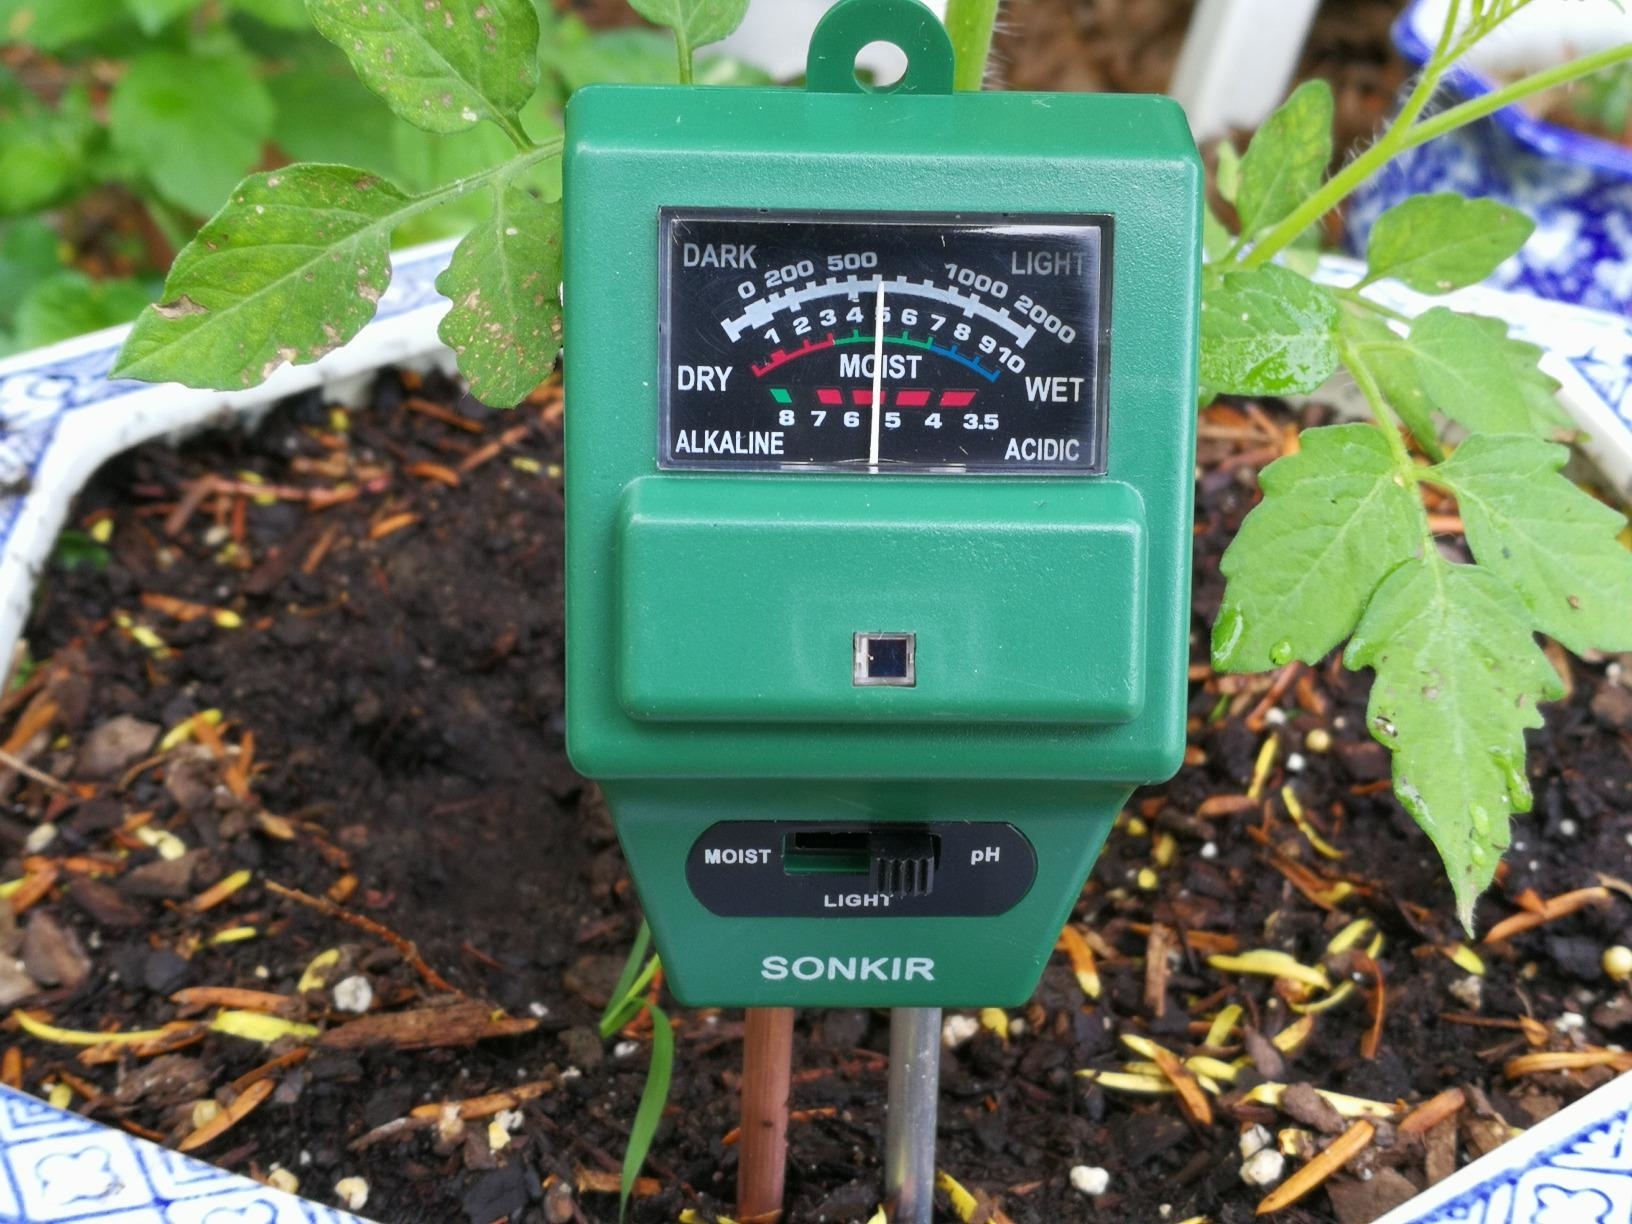 Soil moisture and pH meter inserted in soil for garden maintenance